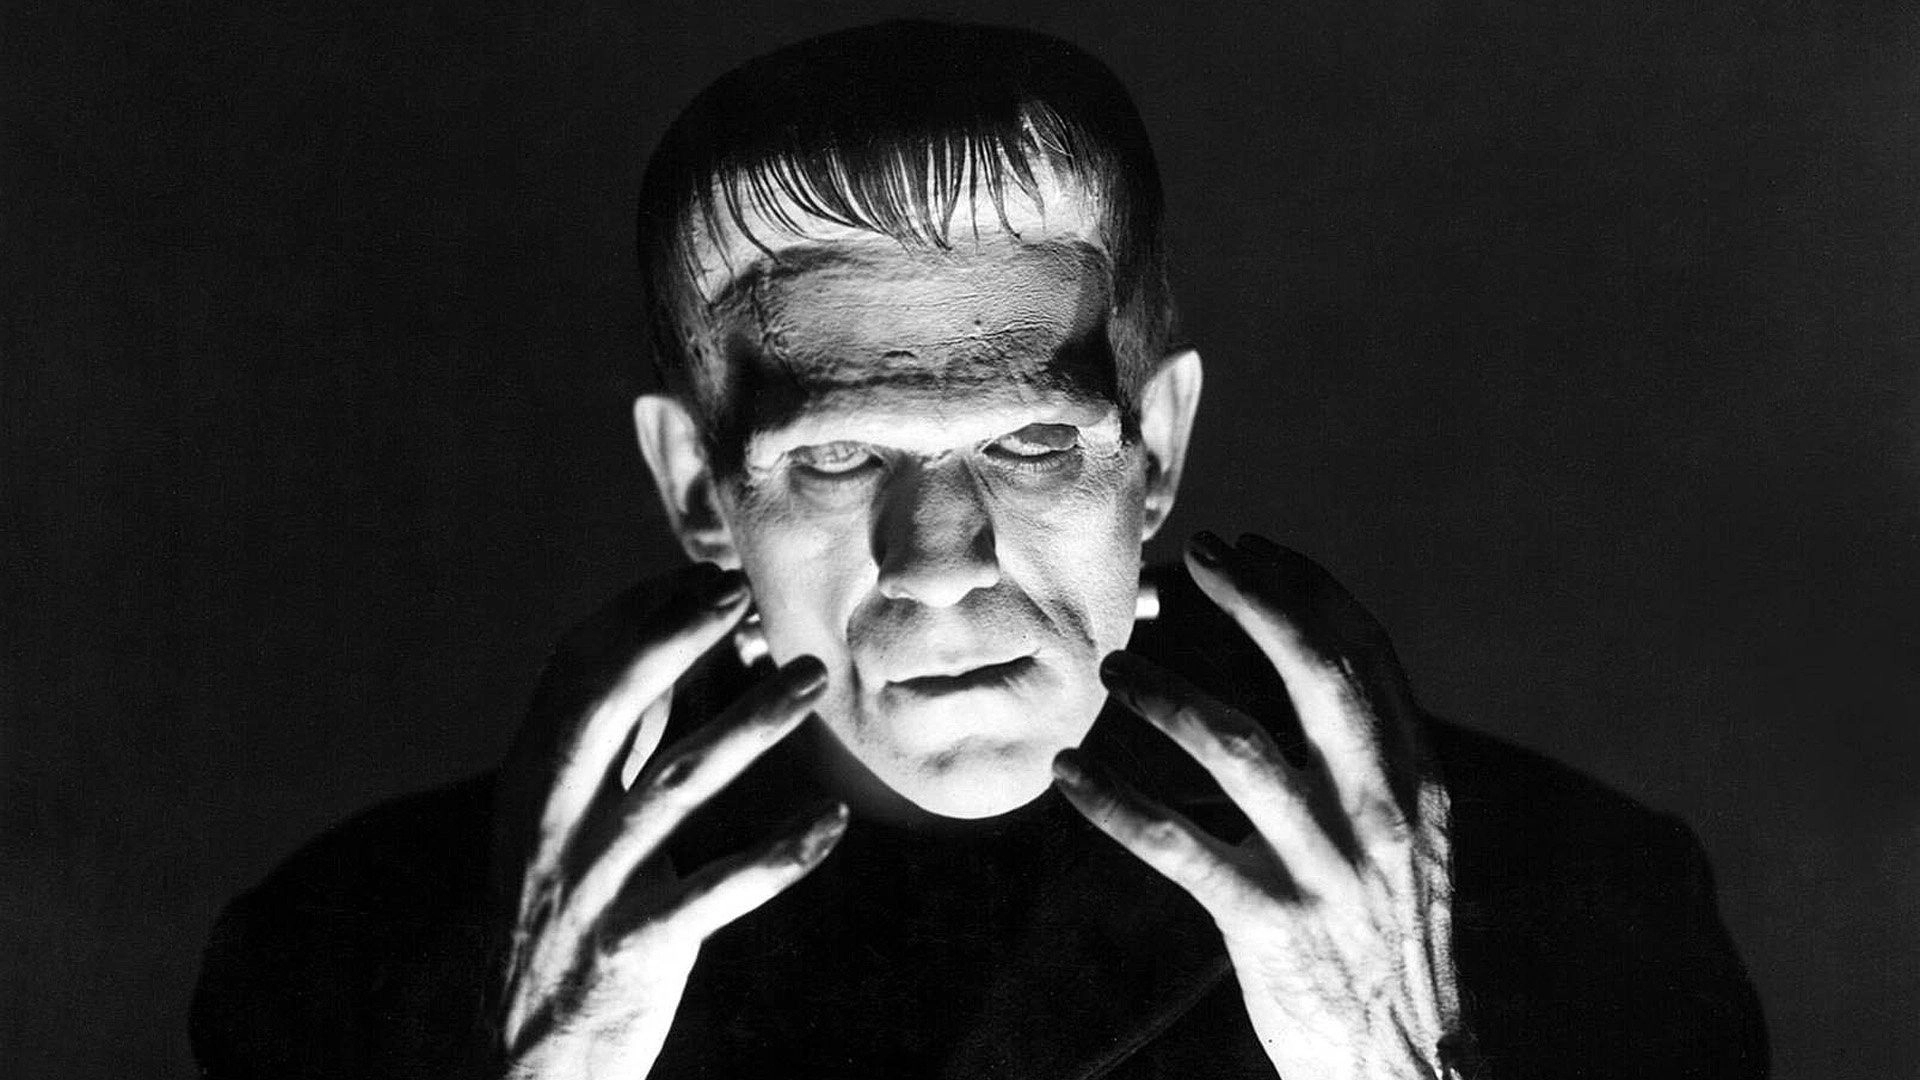 Waltz Waltzes Into del Toro's Frankenstein Reimagining